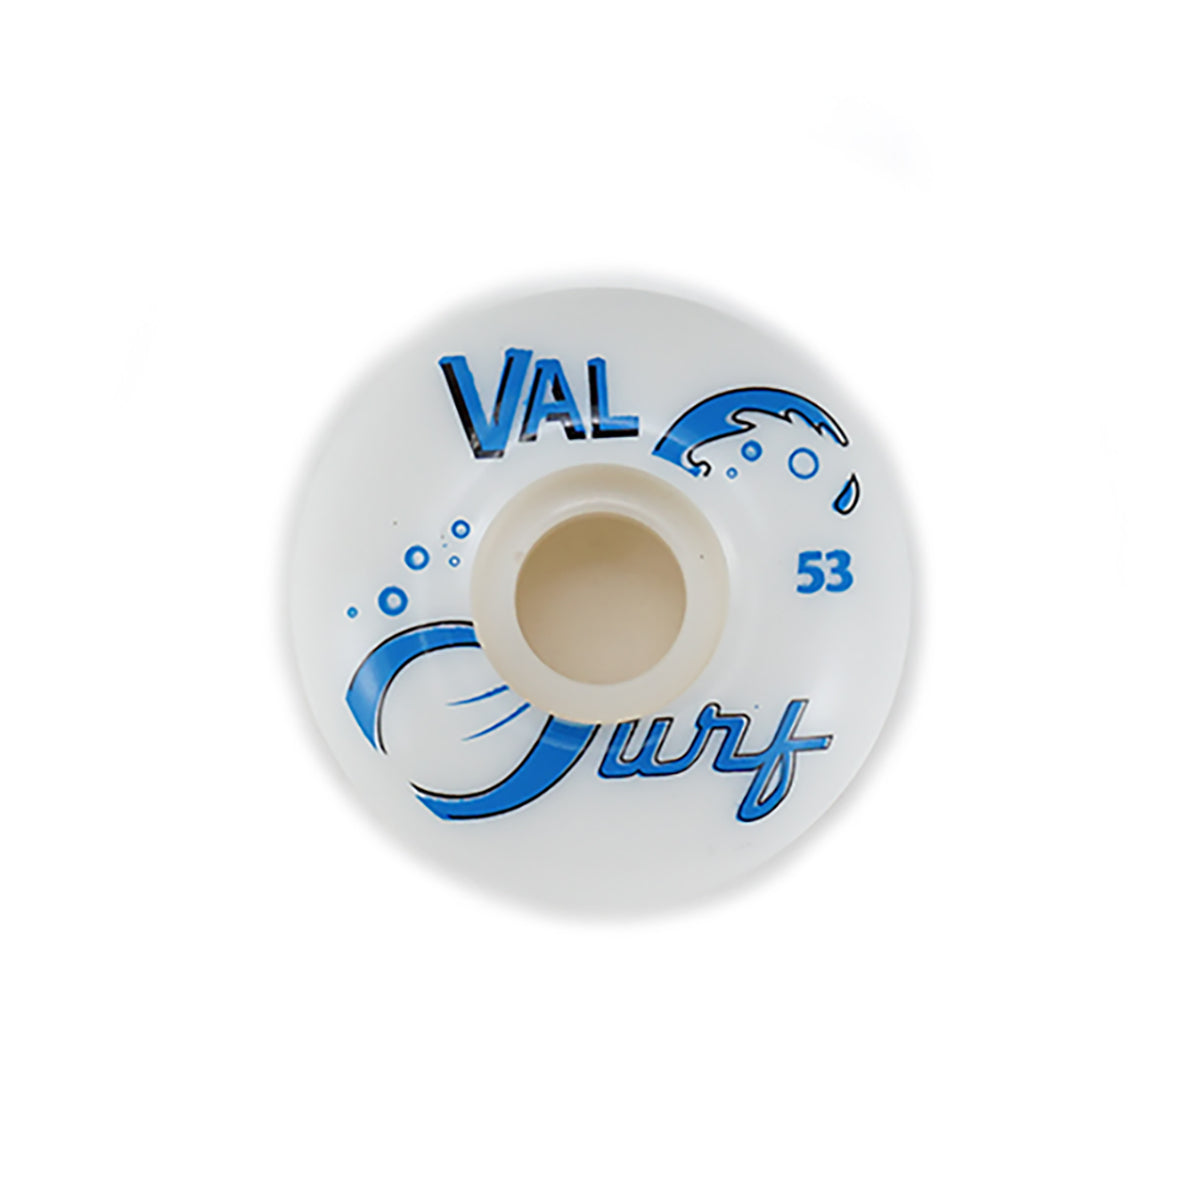 Val Surf Original Logo Set - White/Blue - 53